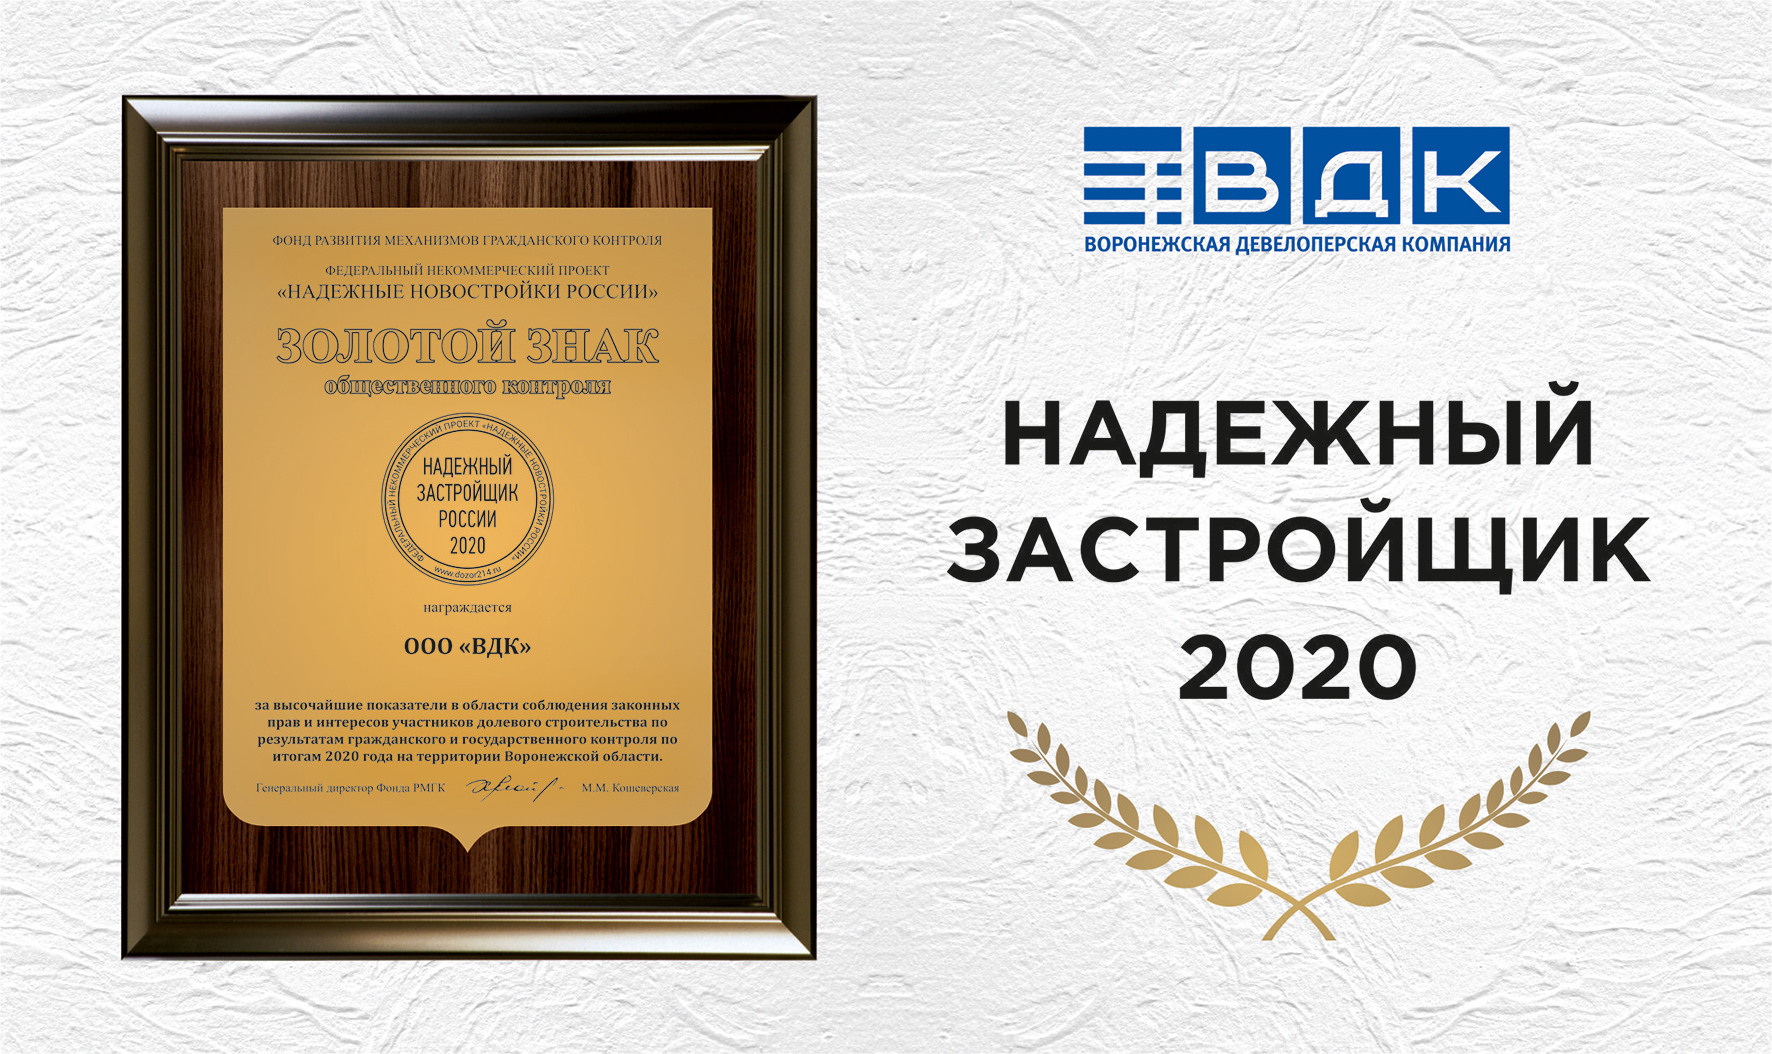 «ВДК» вновь получила золотой знак «Надежный застройщик России 2020» - фото 1